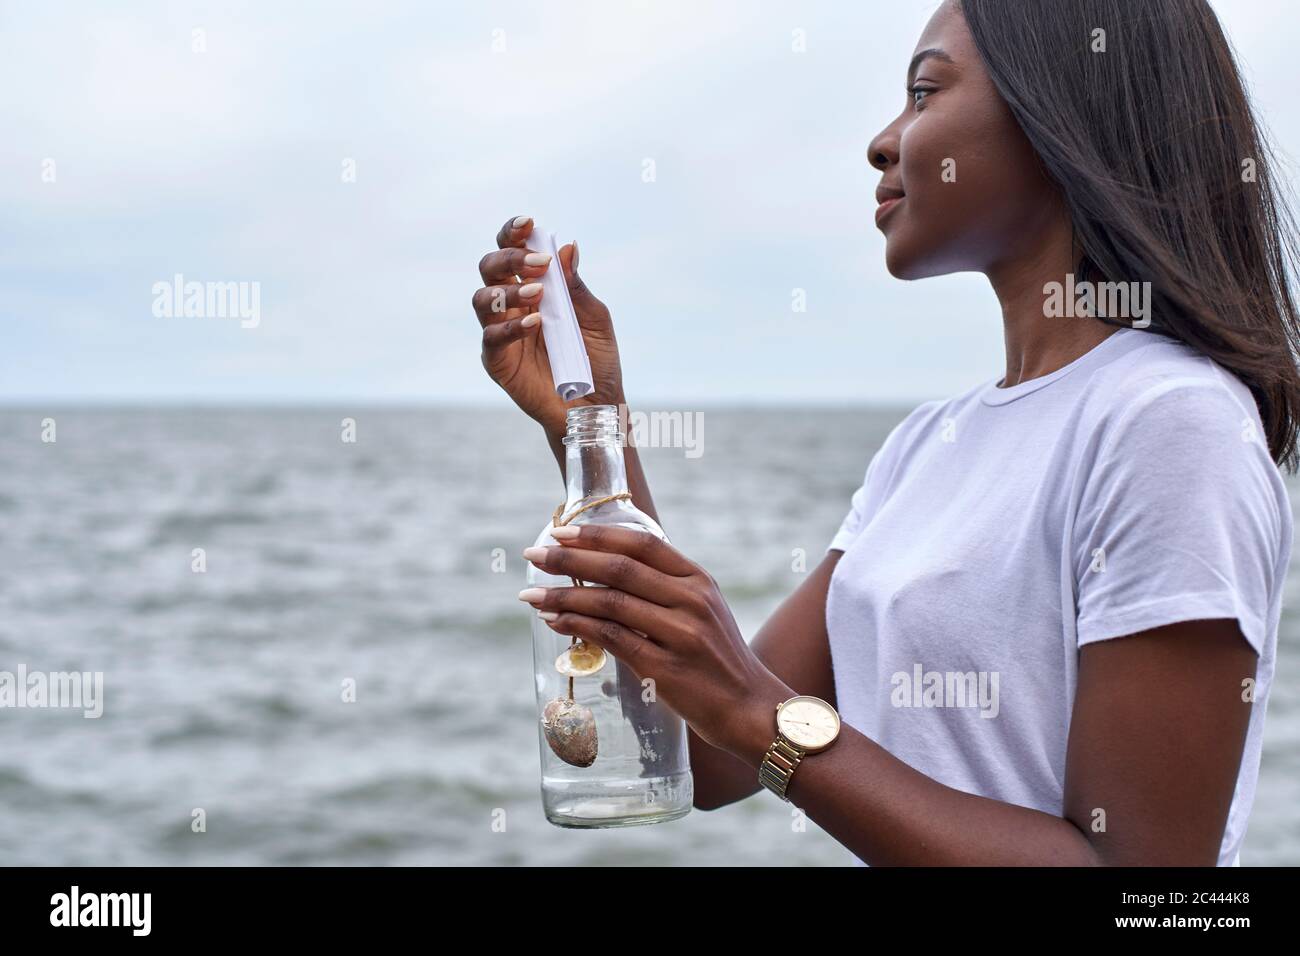 Profil de la jeune femme en face de la mer envoyant un message dans une bouteille Banque D'Images